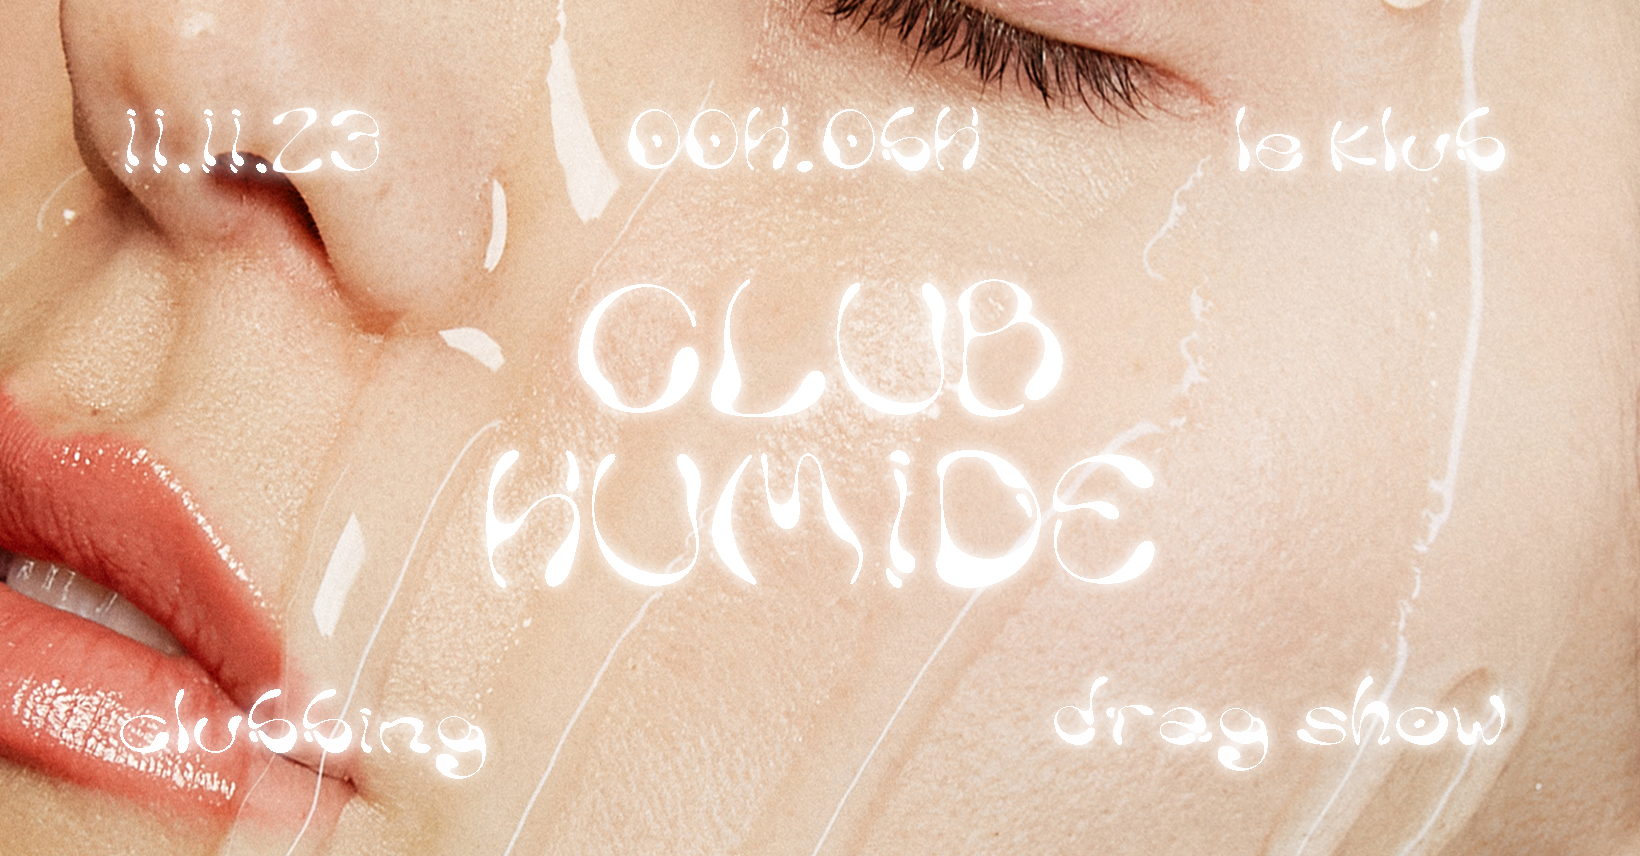 Club Humide Vol.2 – Le Klub